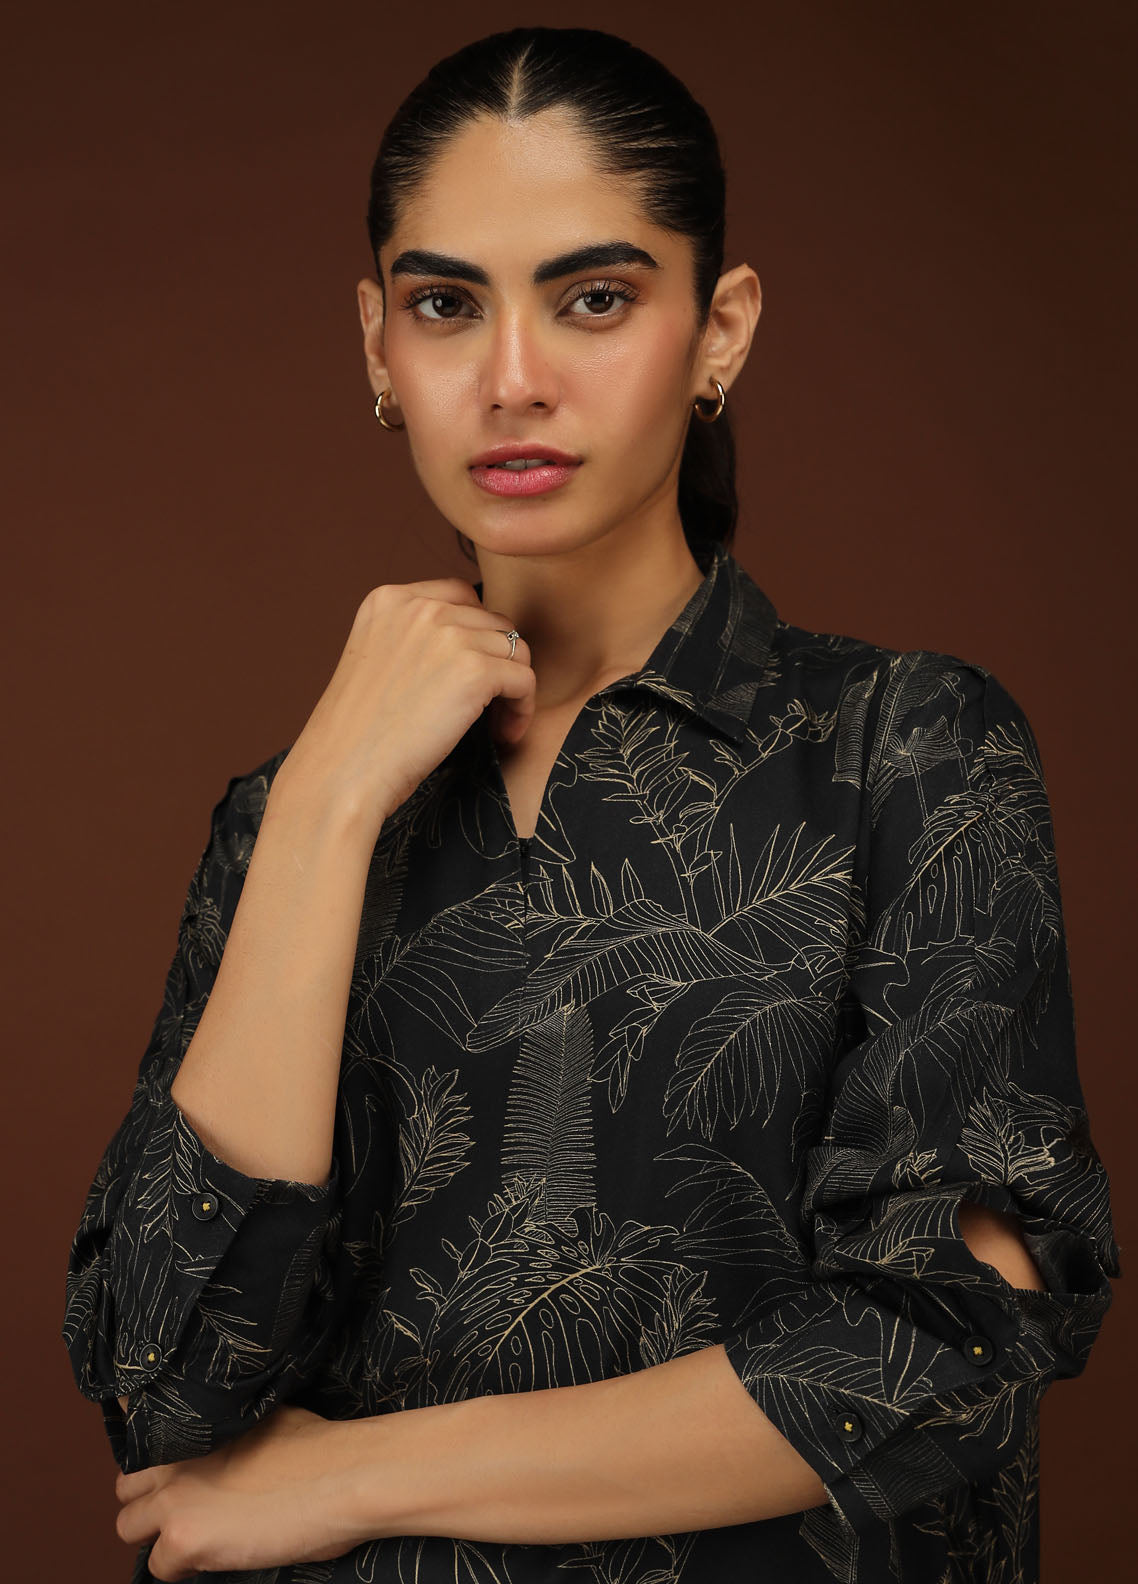 Sahar Pret Printed Cotton 2 Piece Suit SSCS-ZH-07